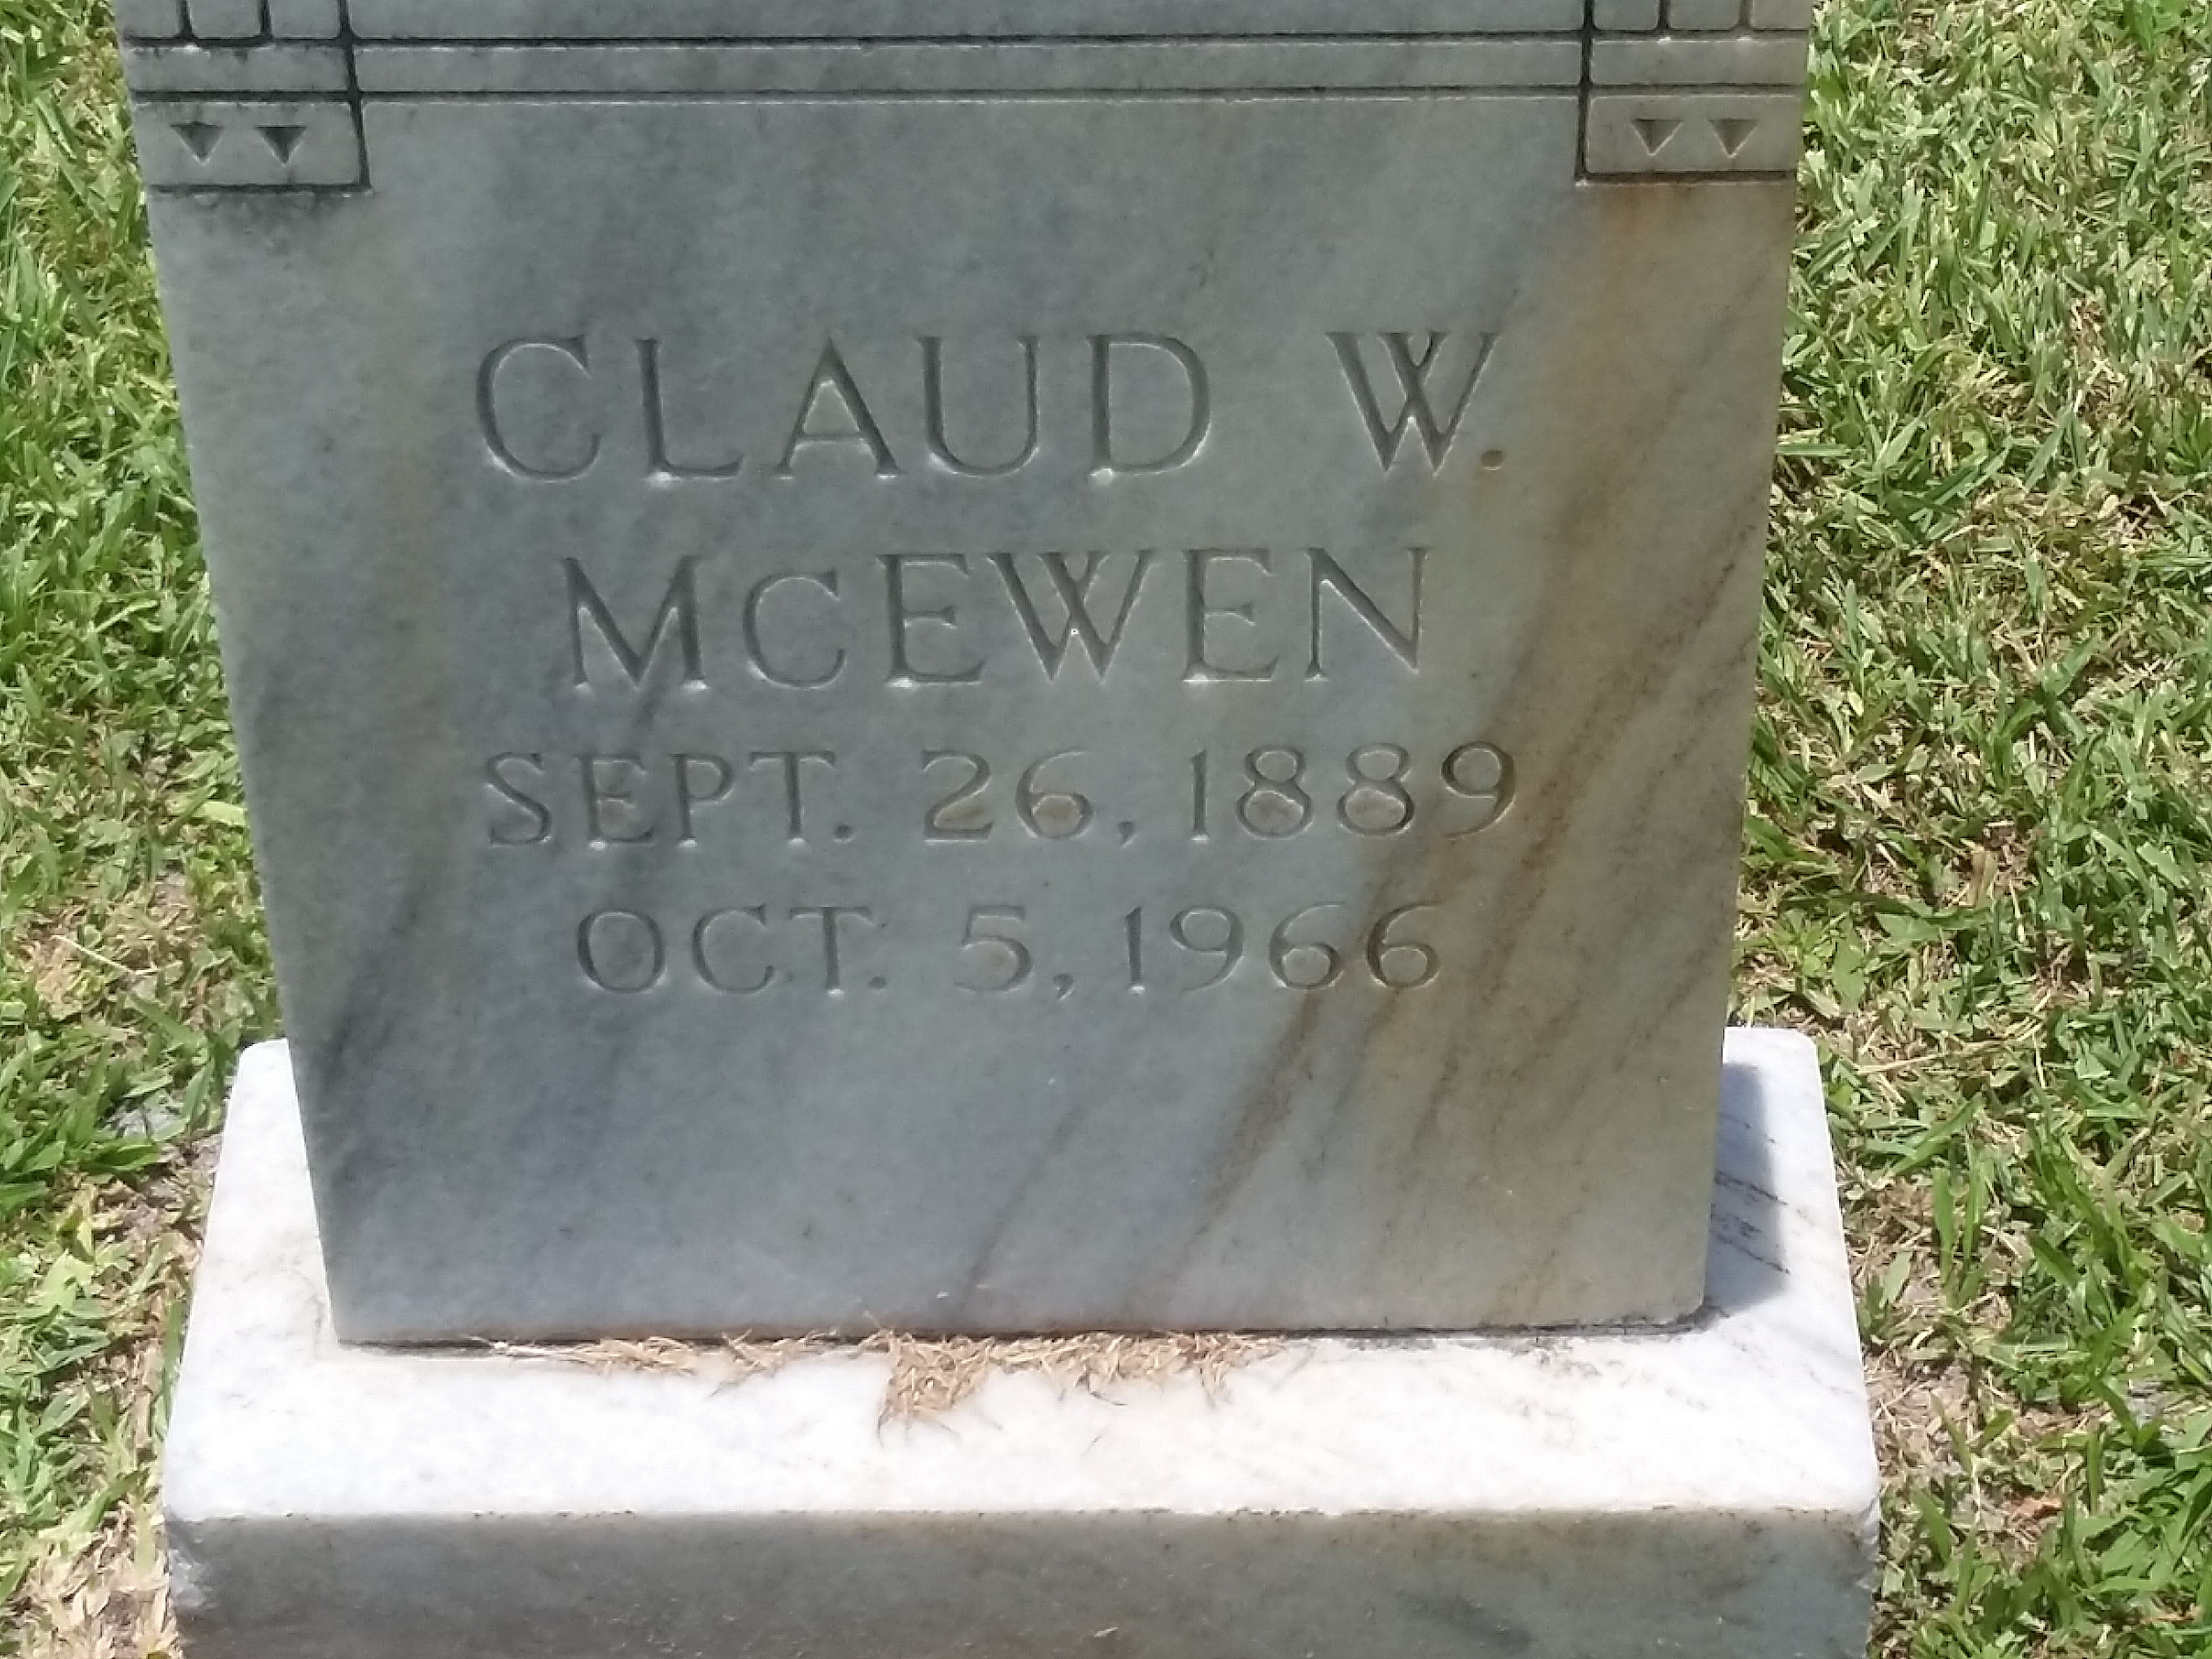 Claud W McEwen